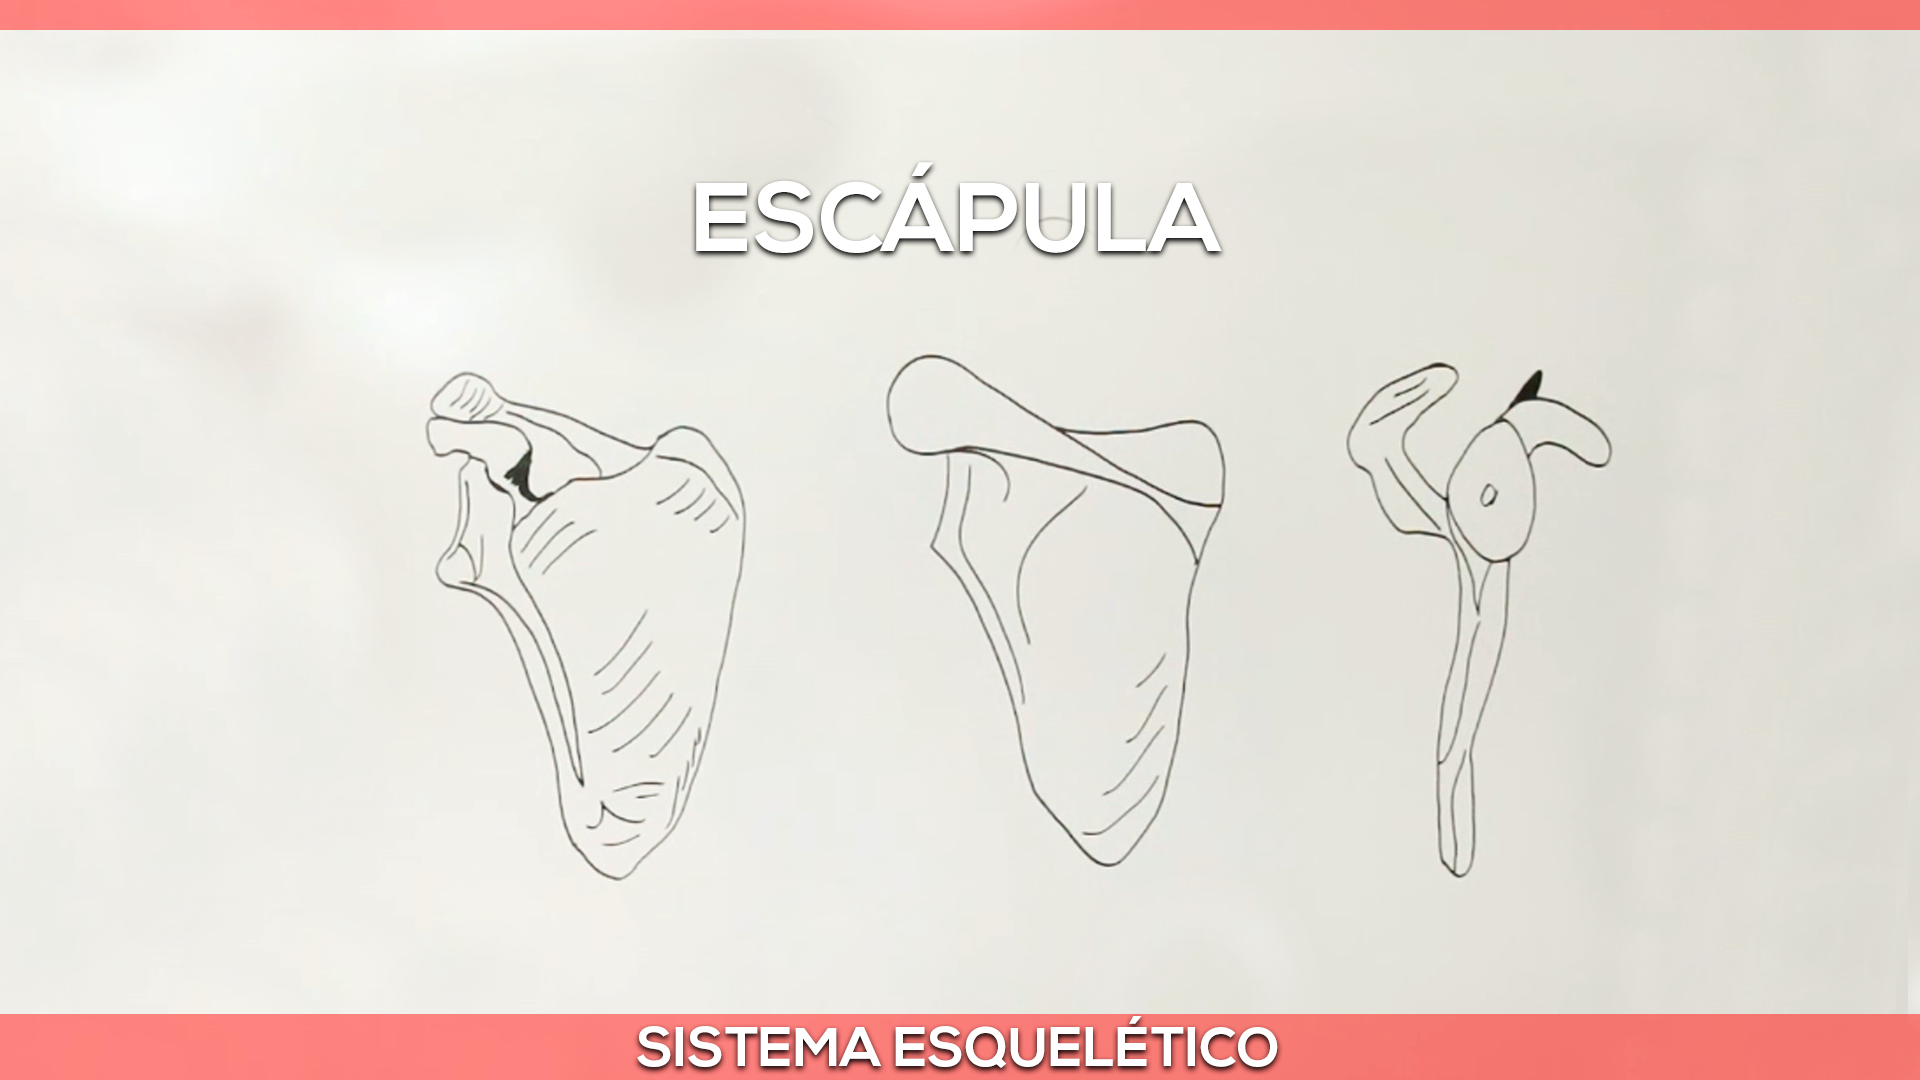 Cintura escapular: Escápula — Felipe Barros